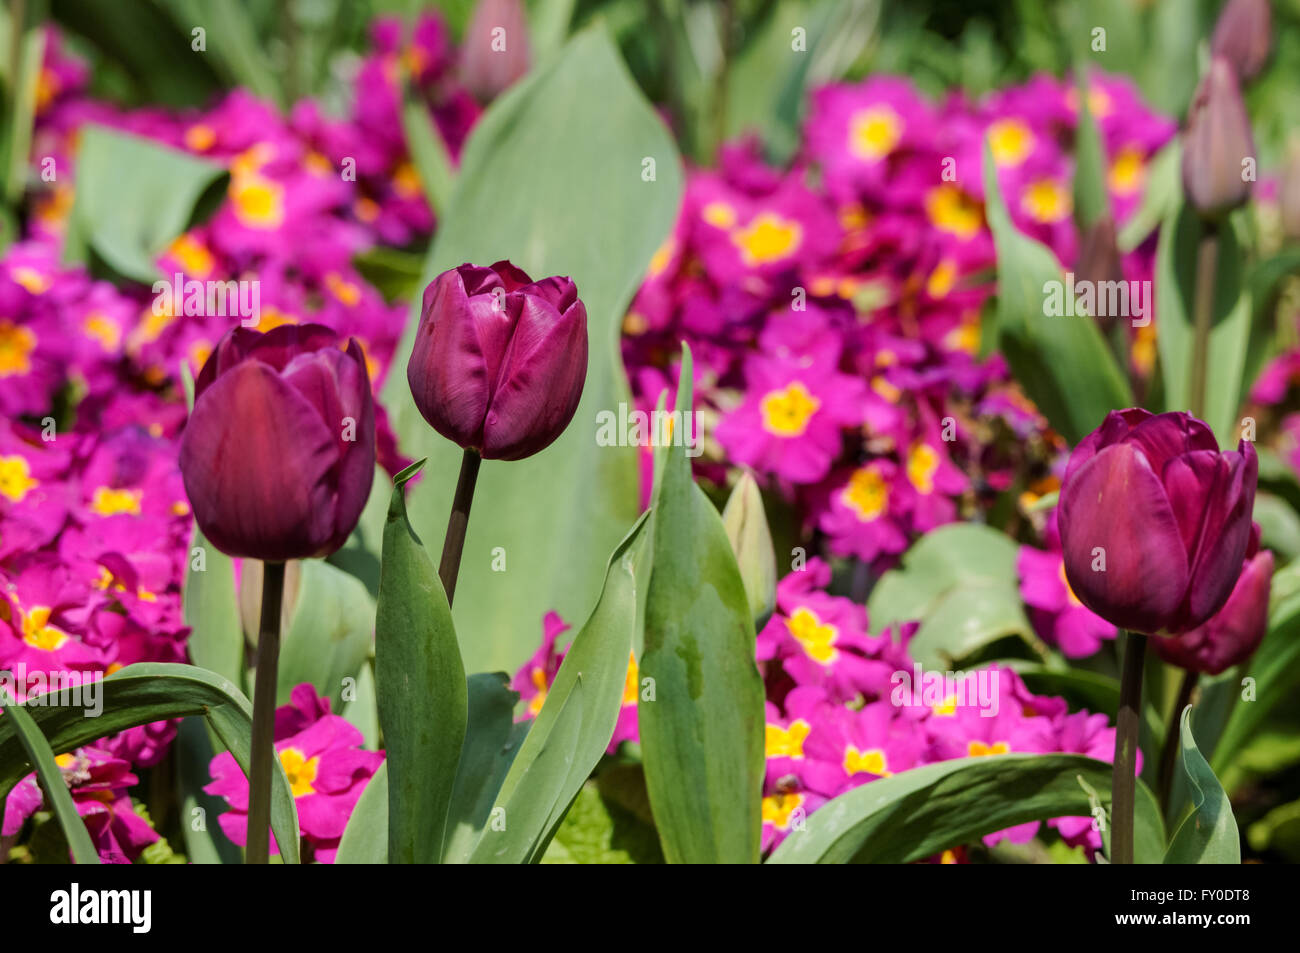 Tulipes violettes et priroses sur parterre Banque D'Images